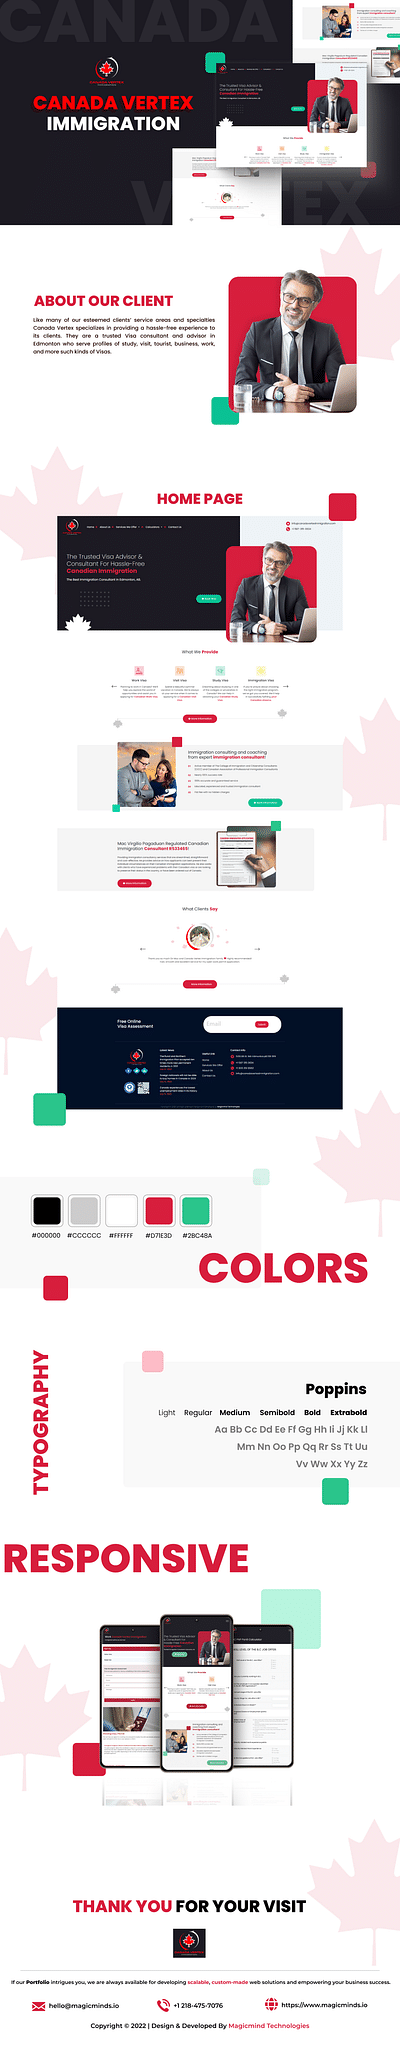 Canada Vertex: Website for Immigration Consultants - Aplicación Web